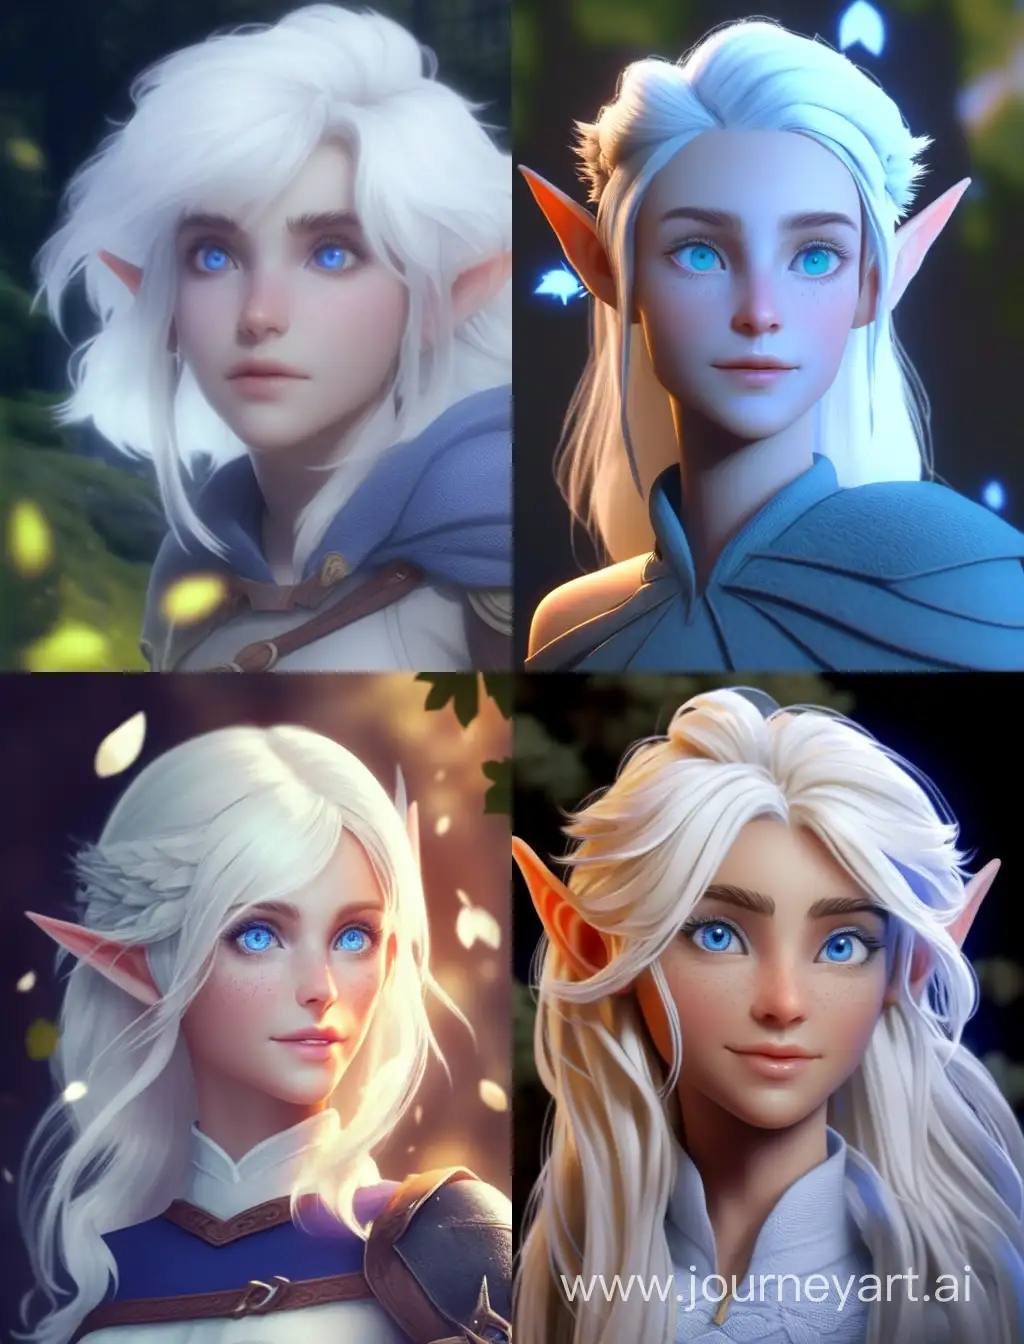 Enchanting-Elf-Lady-with-Spectral-Magic-Blue-Eye-Hyperrealistic-Fantasy-Art